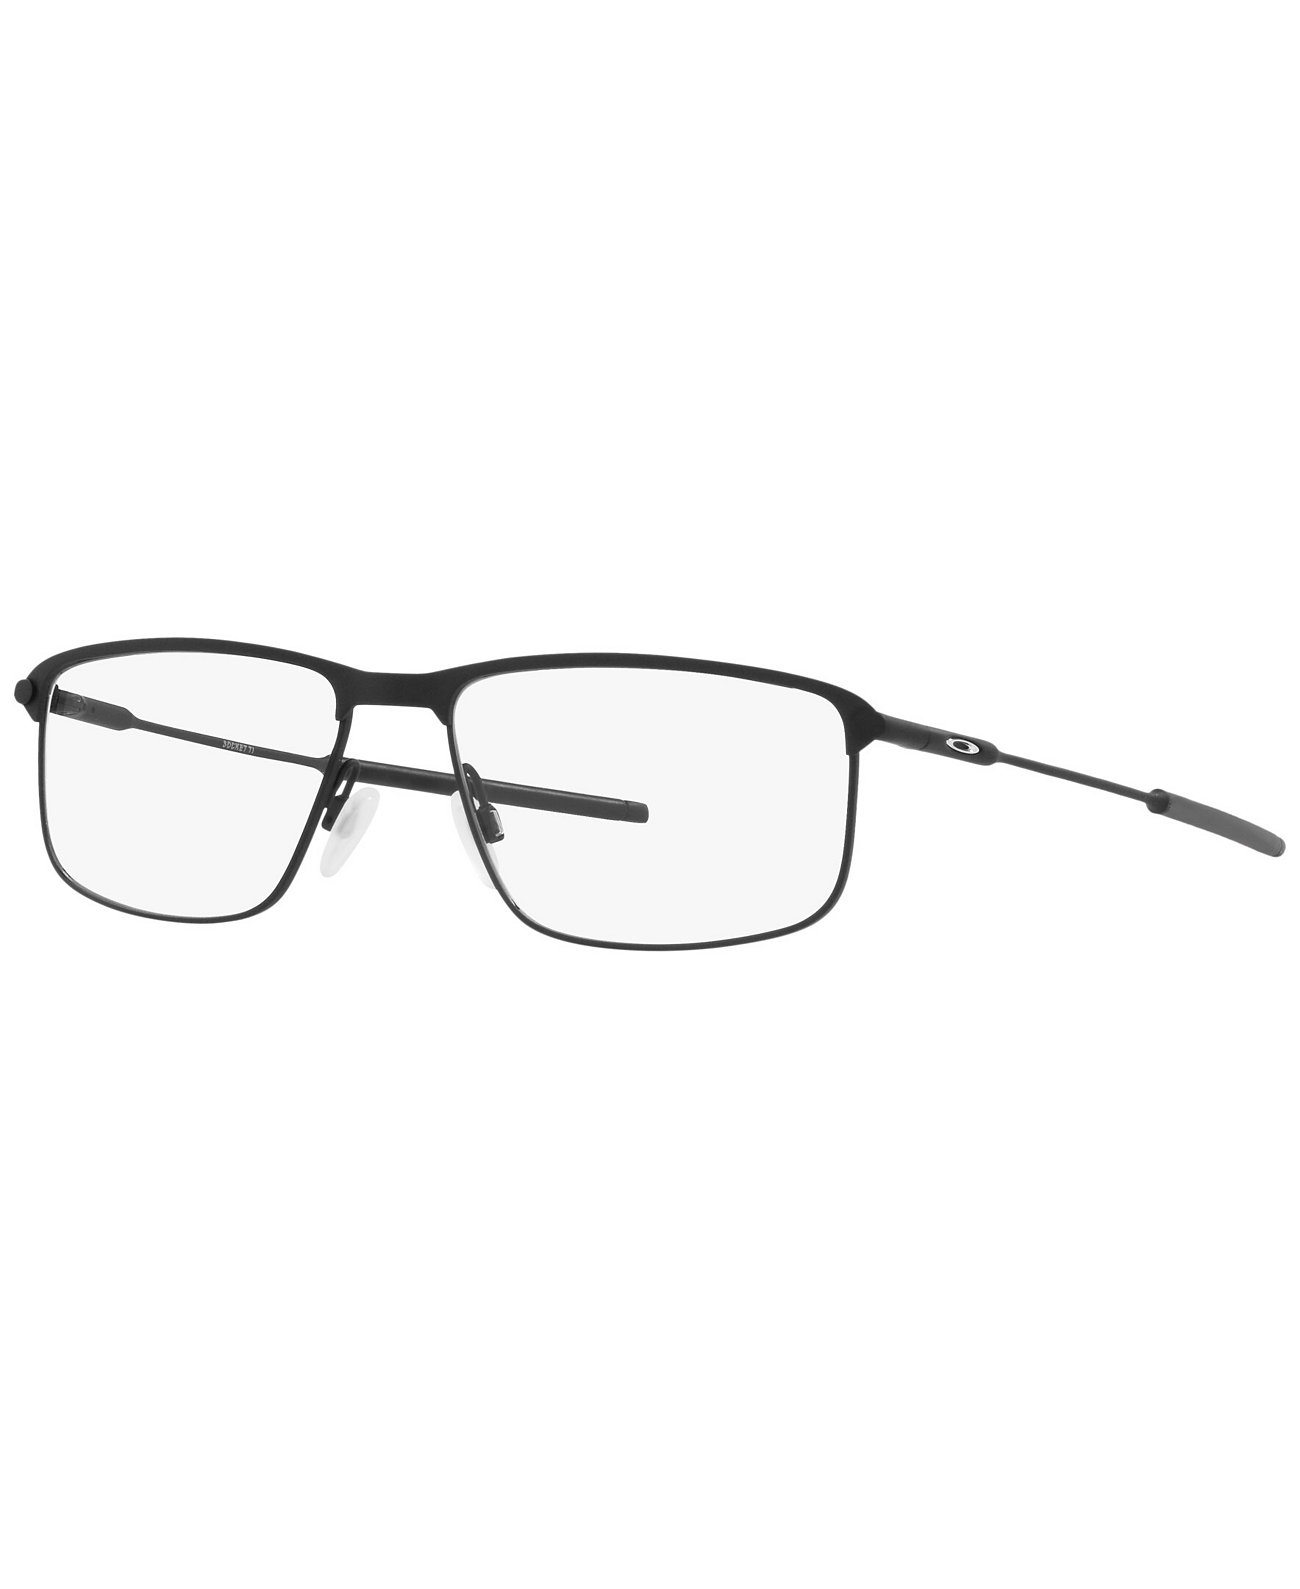 OX5019 Socket TI Мужские прямоугольные очки Oakley